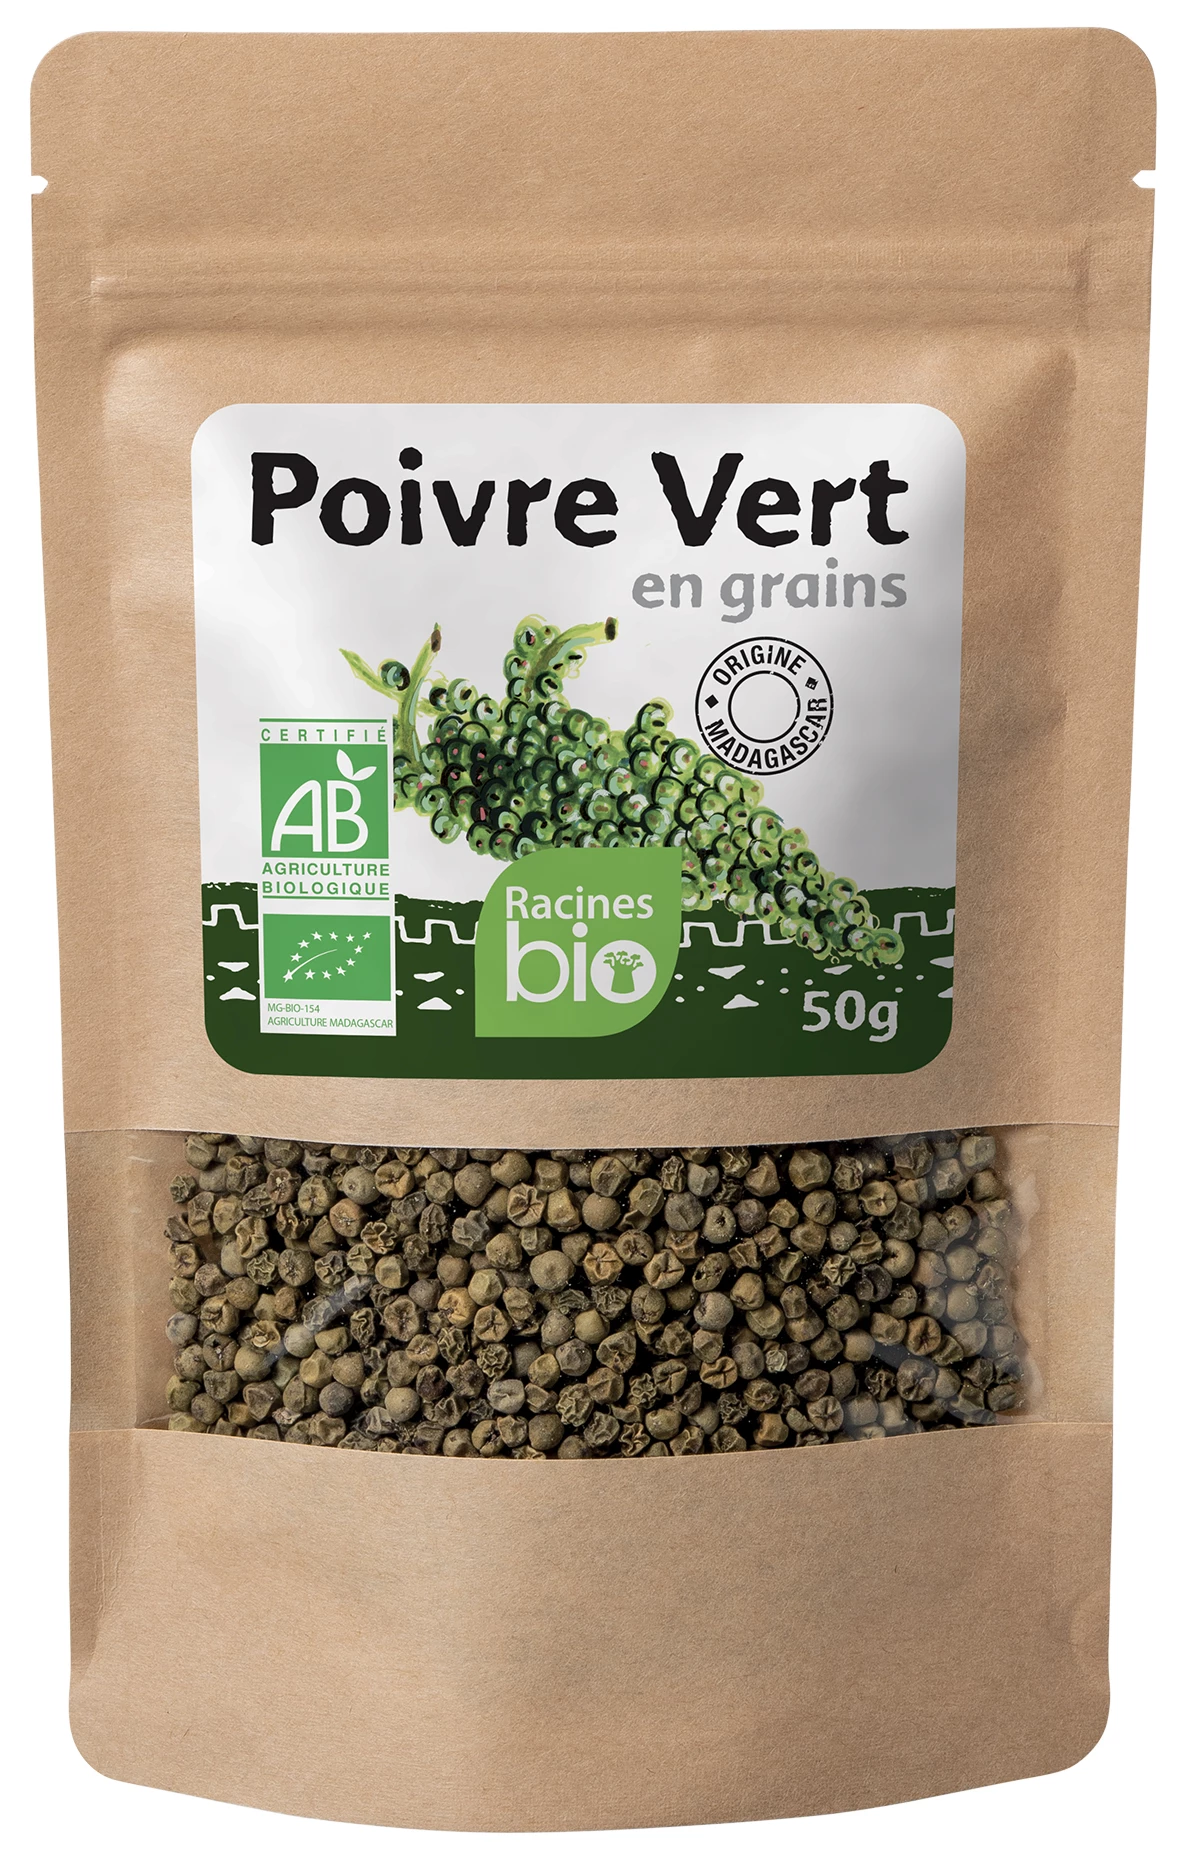 Poivre Vert En Grains (20 X 50 G) - Racines Bio